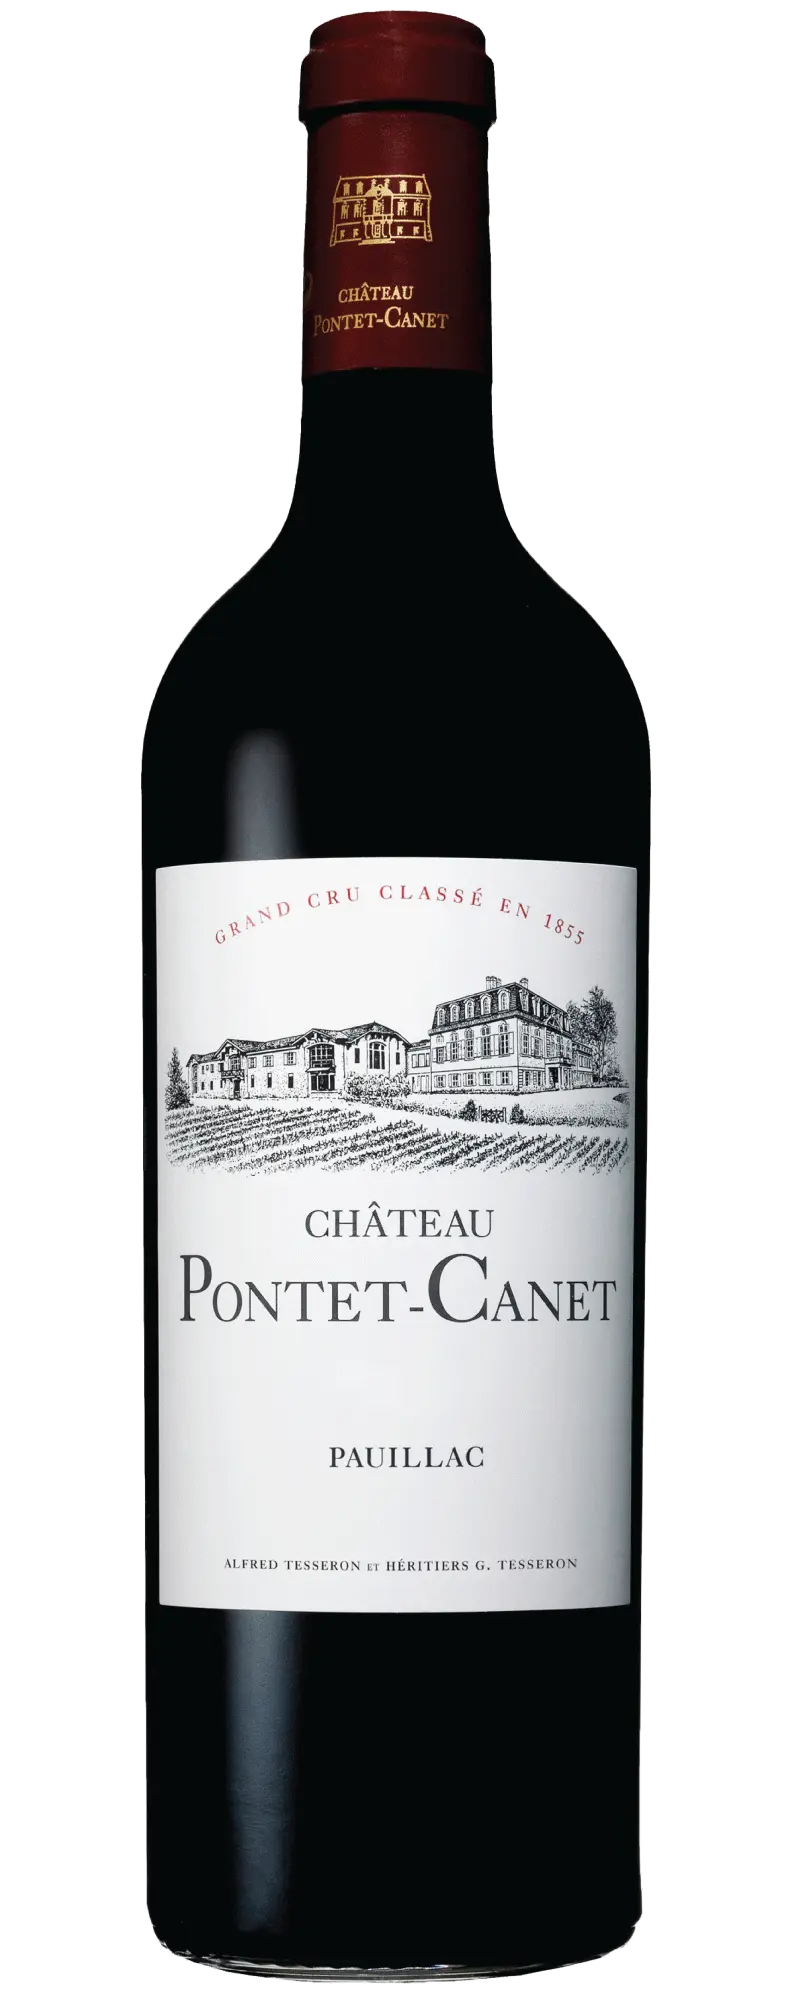 Chateau Pontet Canet 2007 (1x75cl) - TwoMoreGlasses.com